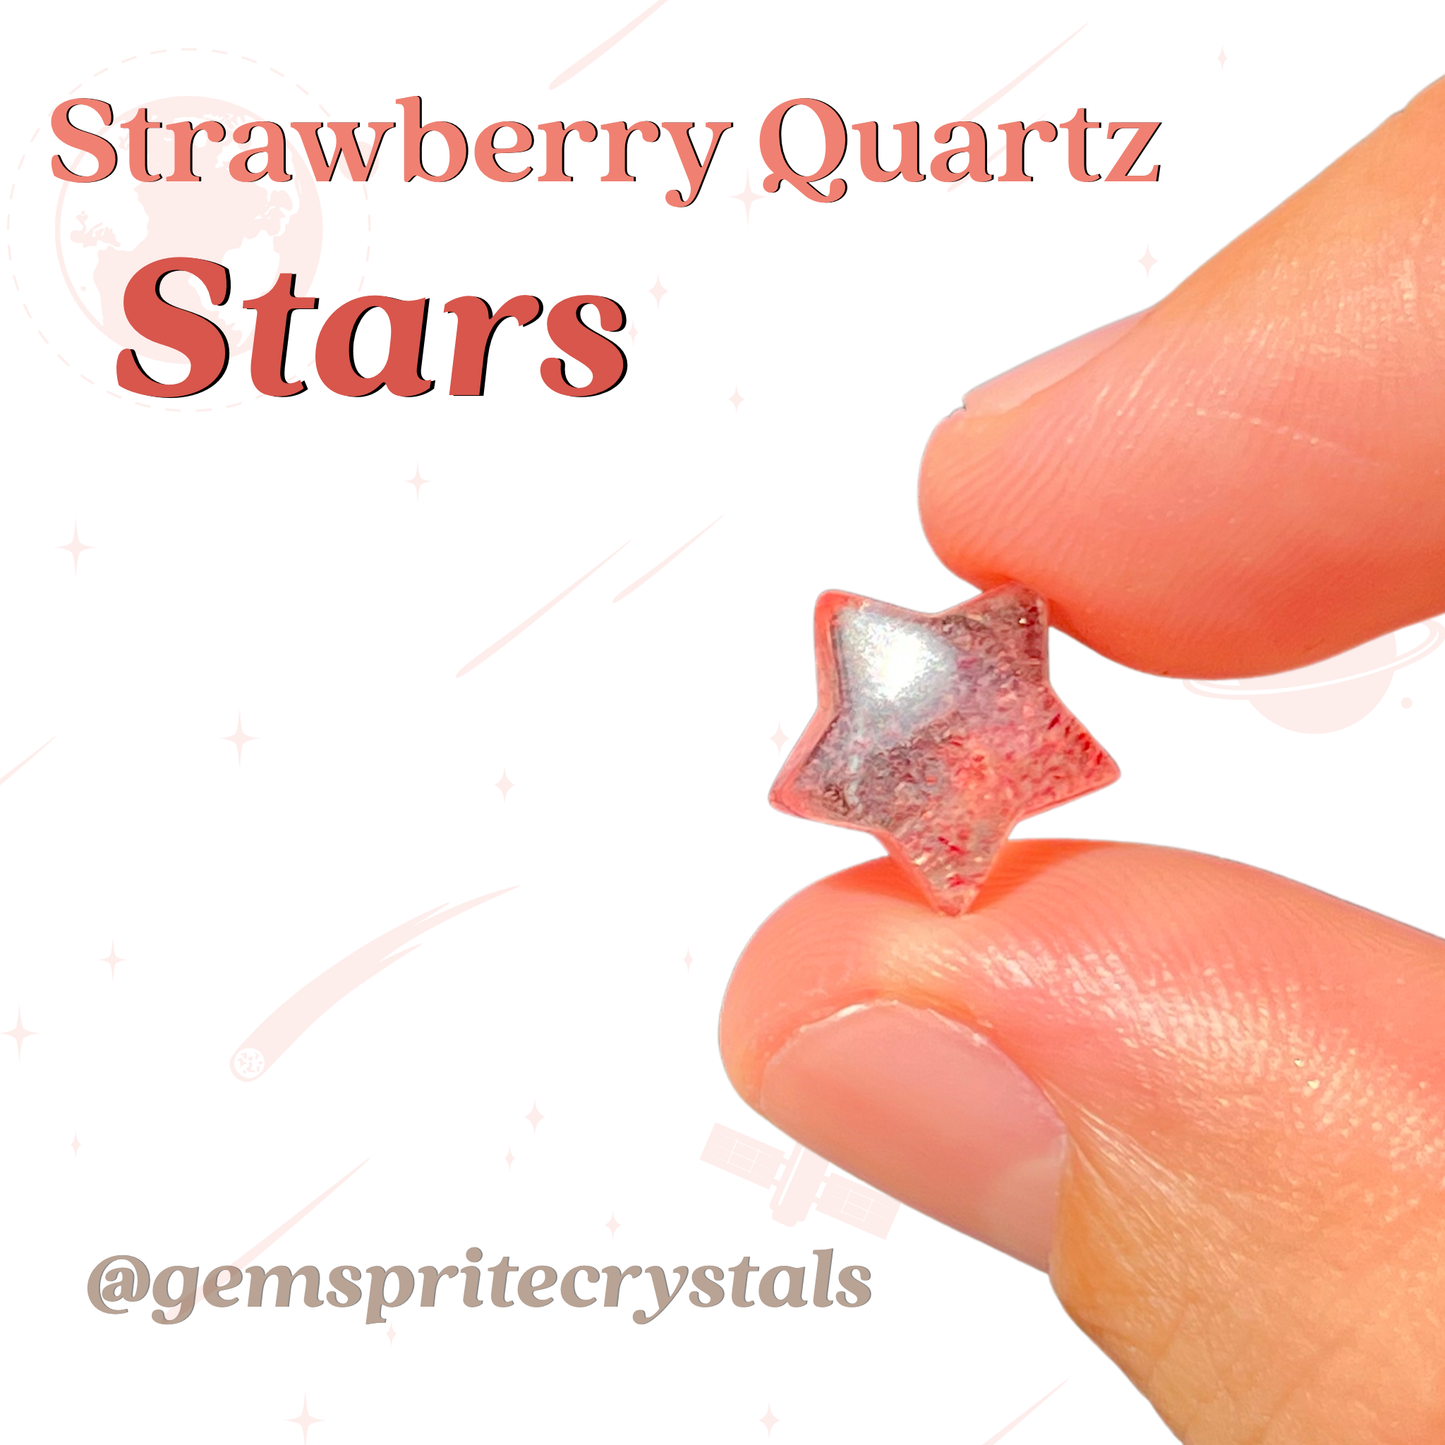 Strawberry Quartz Stars